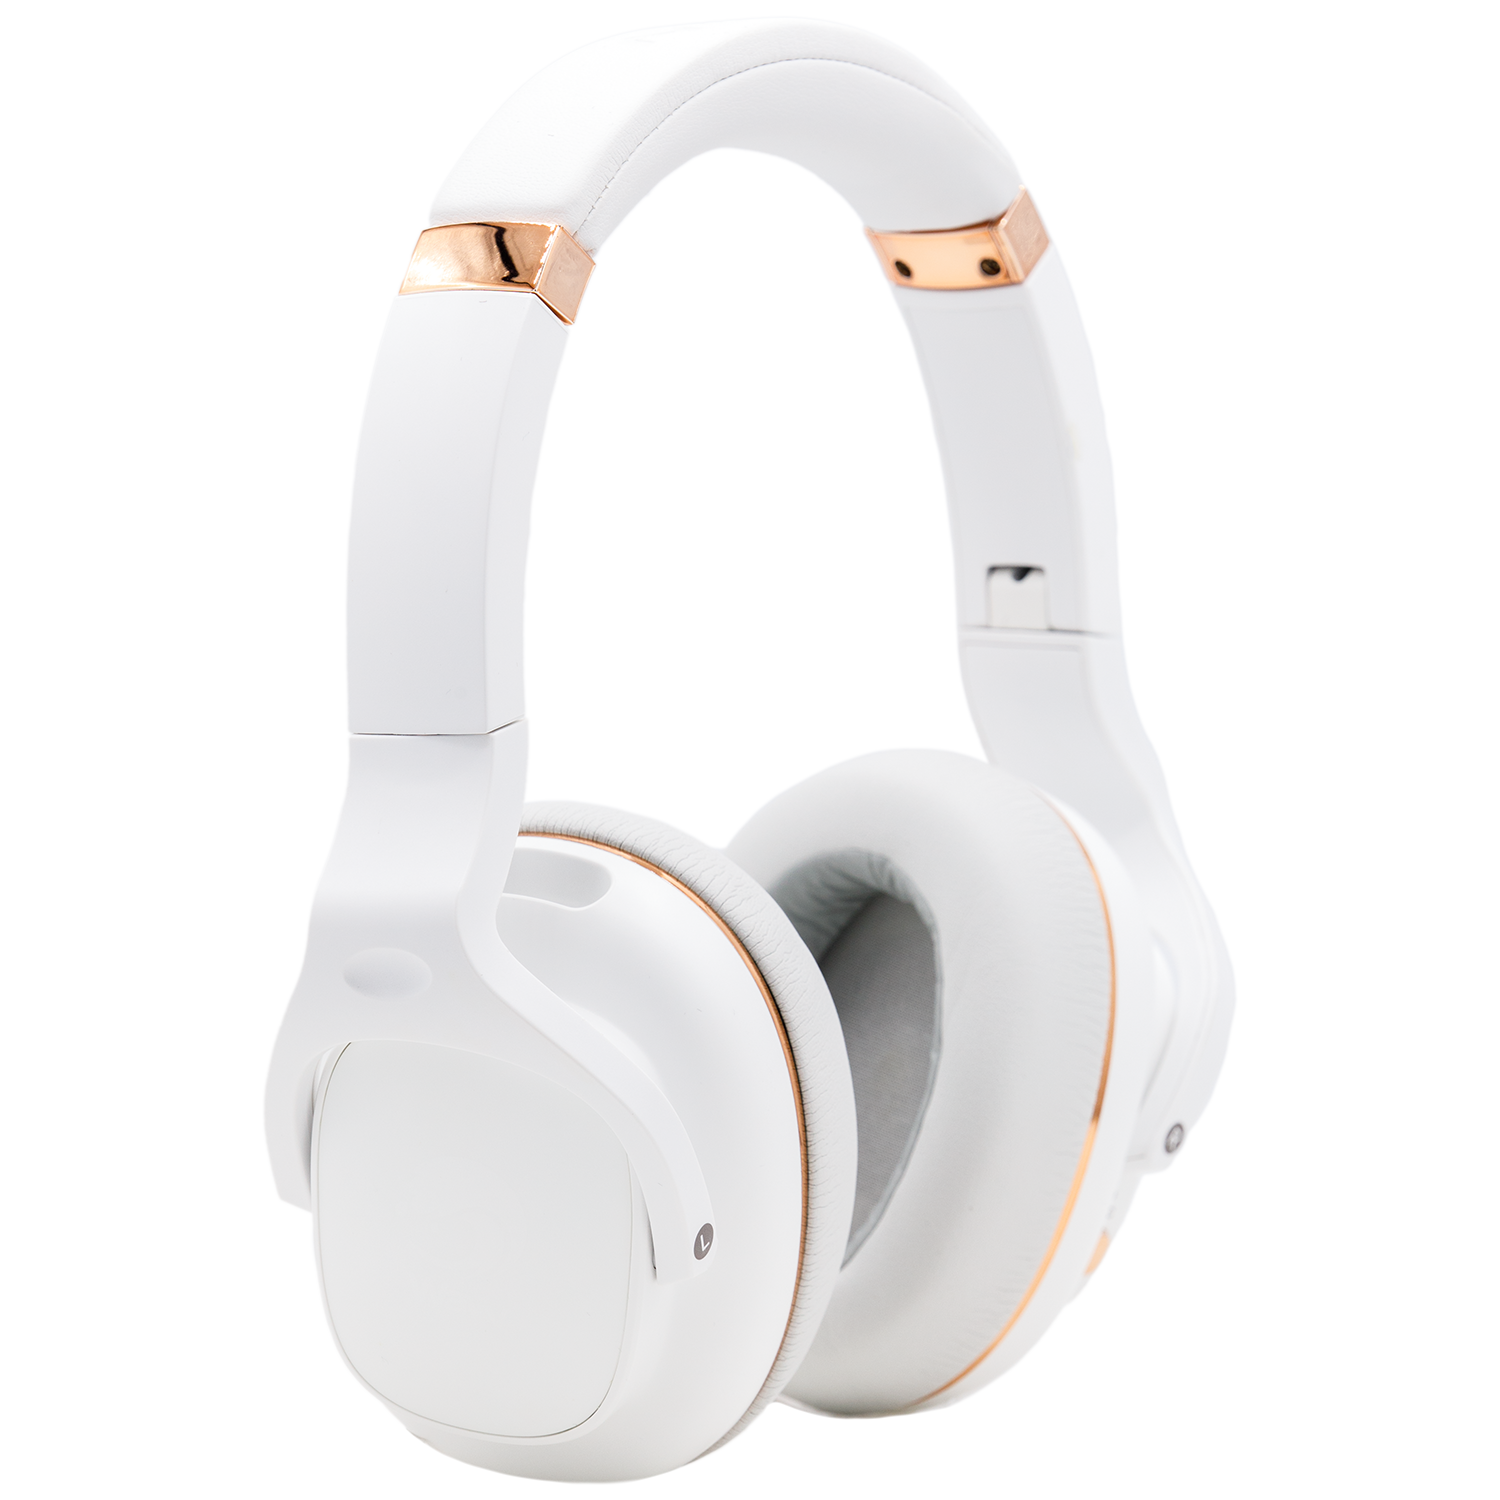 Wavv Element Active Noise Canceling Headphones - White Color